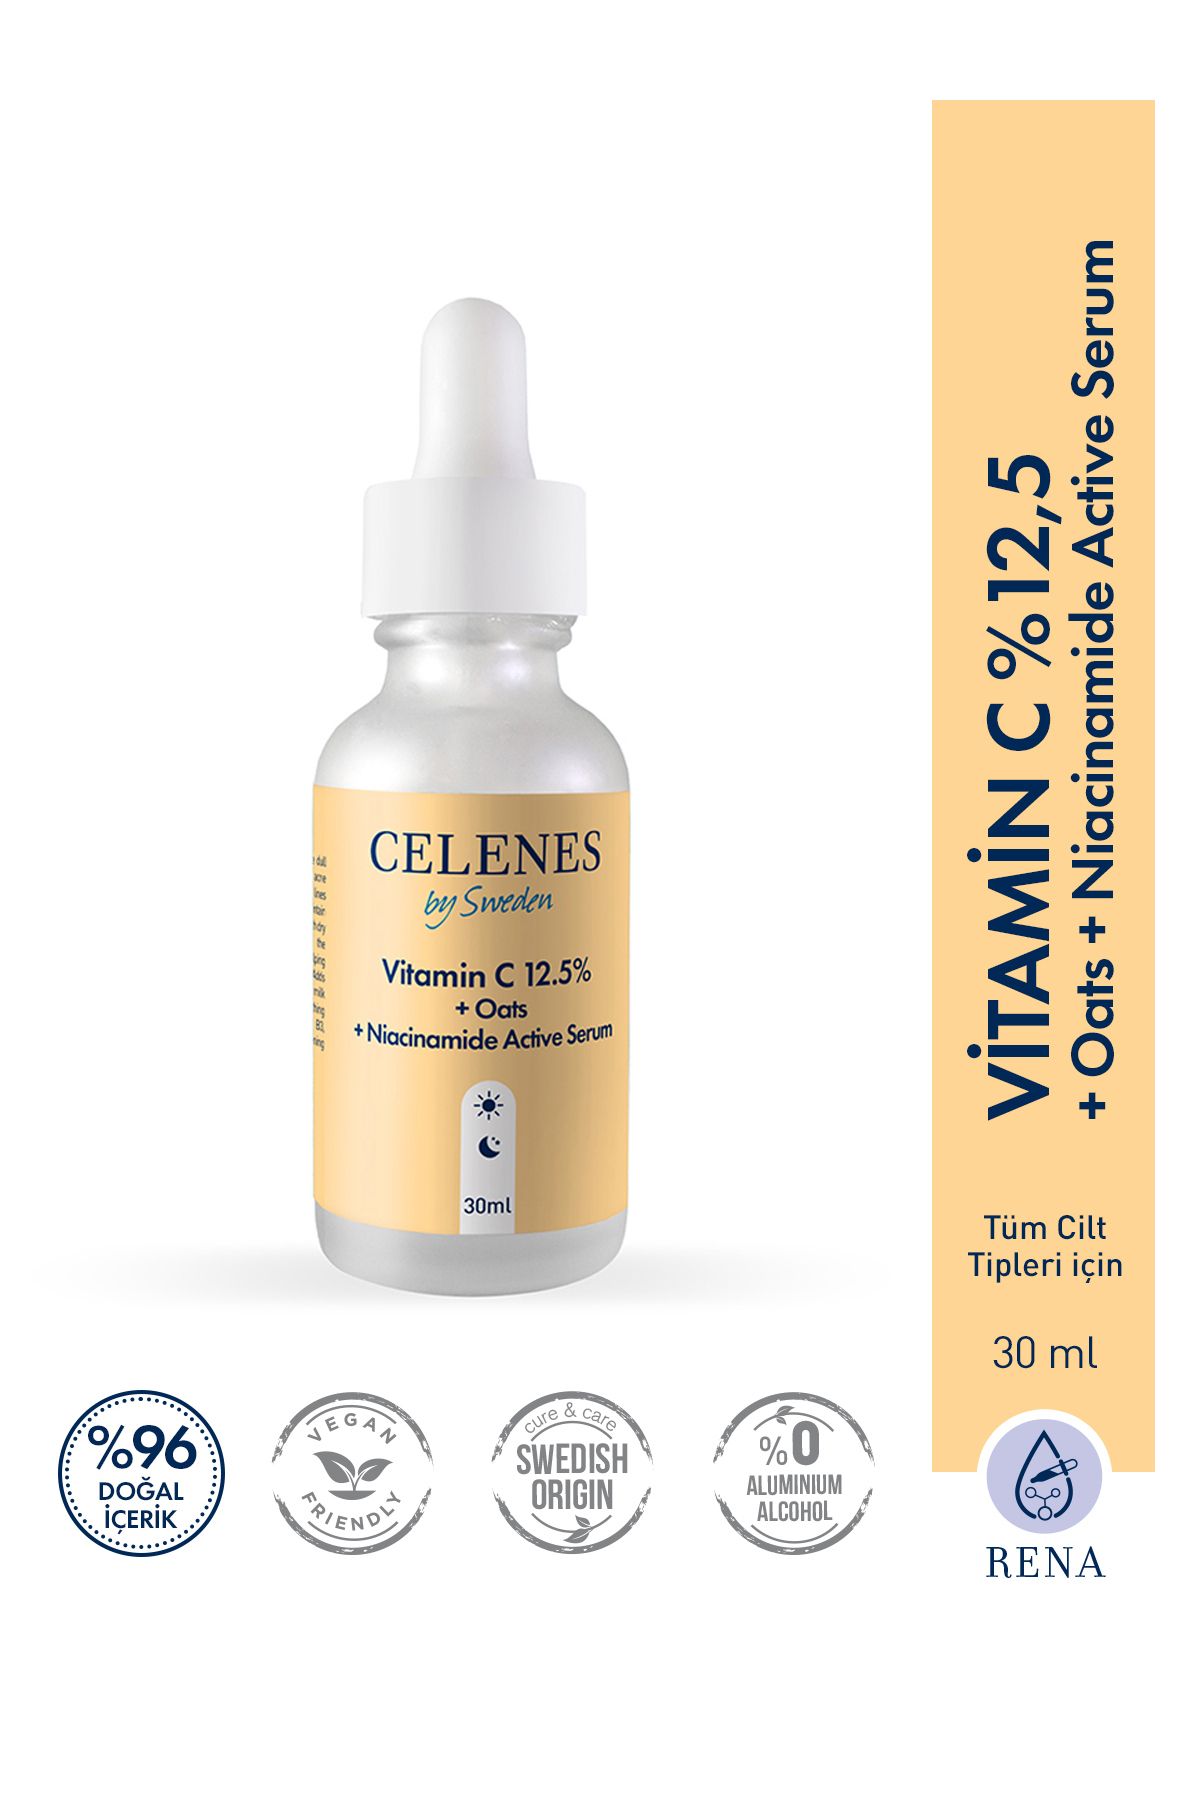 Celenes by Sweden Vitamin C 12.5% + Oats + Niacinamide Active Yüz Serum